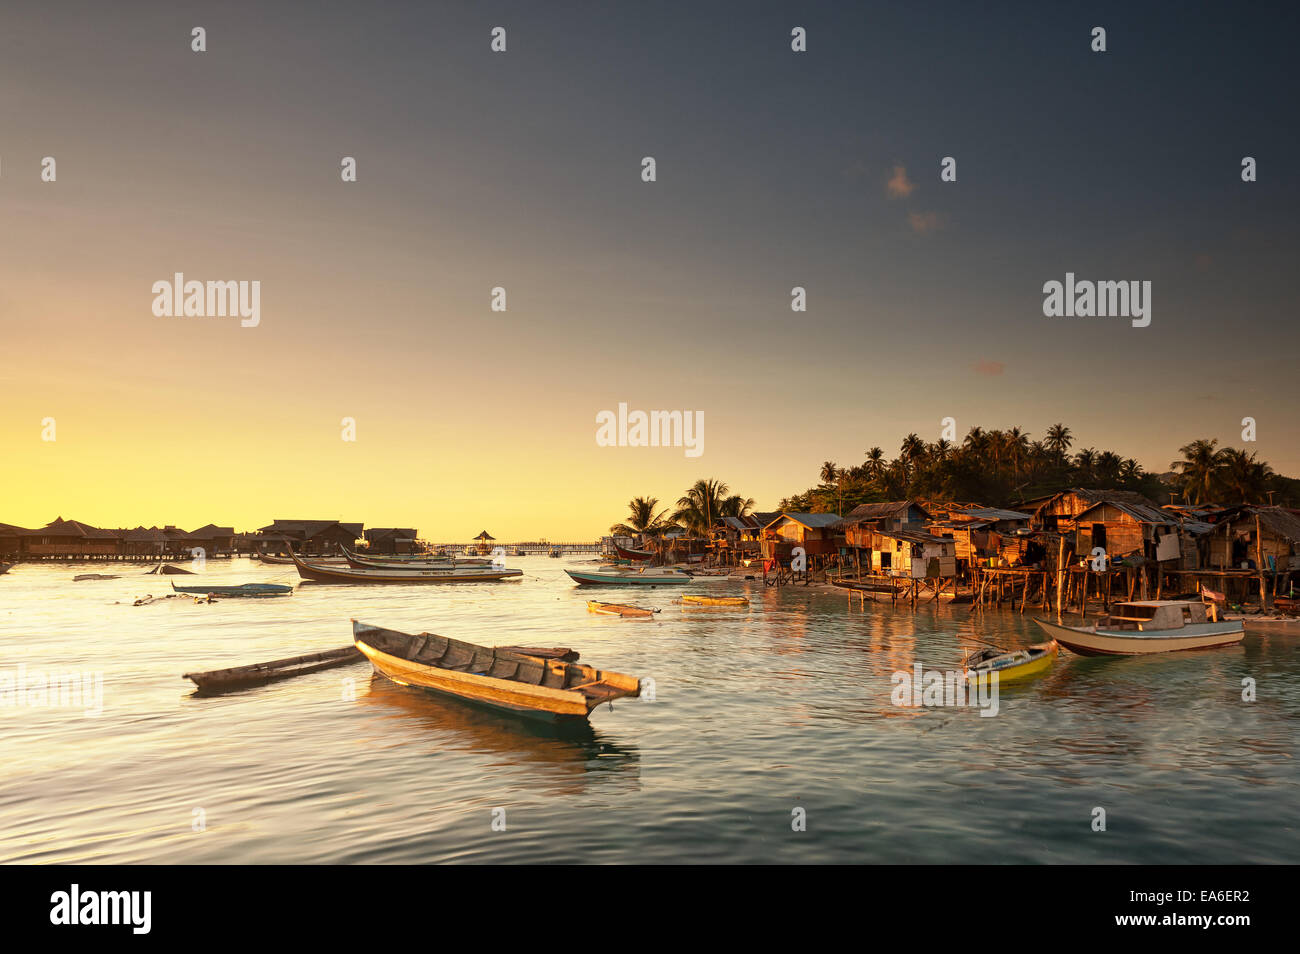 Malasia Sabah, pequeñas embarcaciones y chozas de gitanos del mar al amanecer. Foto de stock